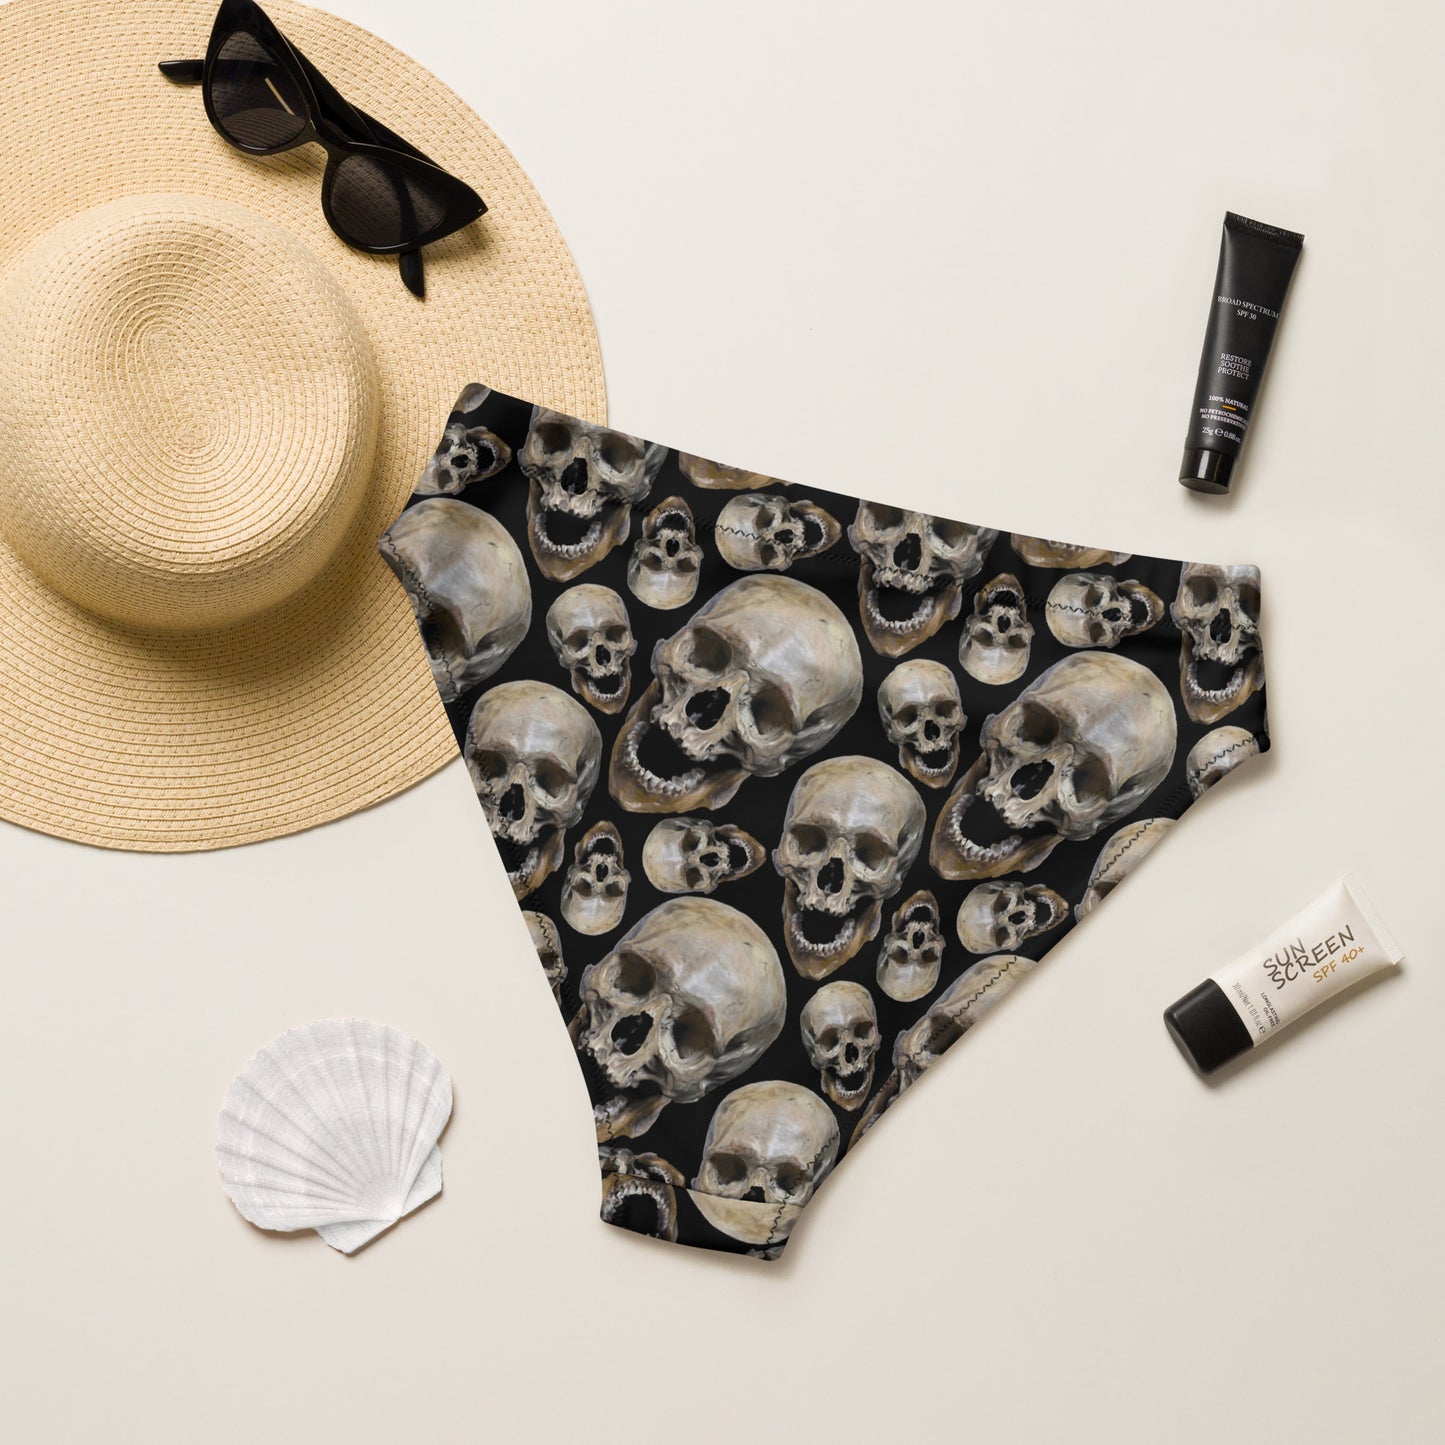 Skull high-waisted bikini bottom